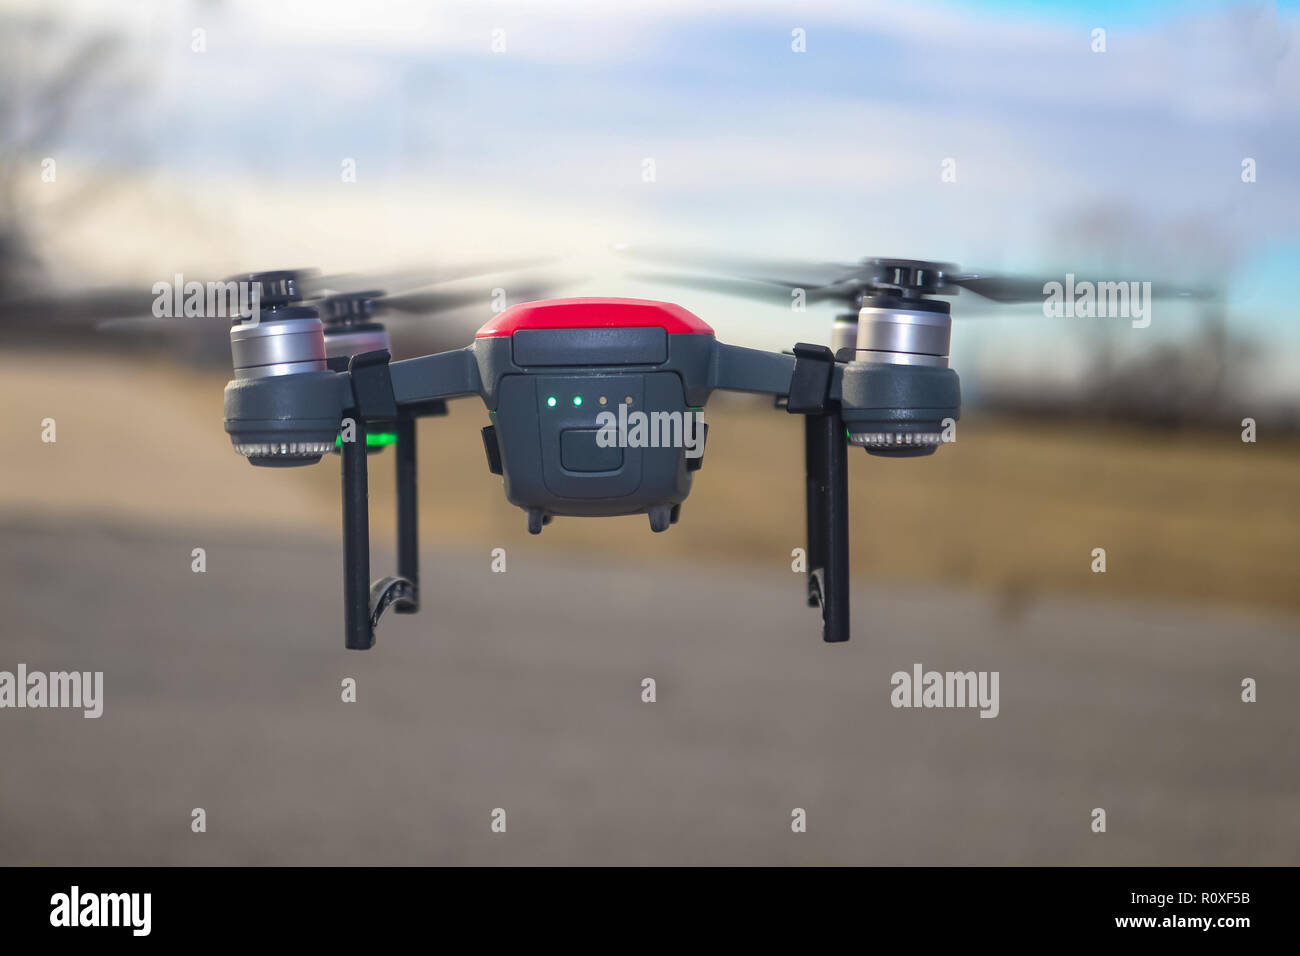 Petit rouge et gris drone avec joint d'atterrissage et batterie à demi-charge battant contre l'arrière-plan flou Banque D'Images